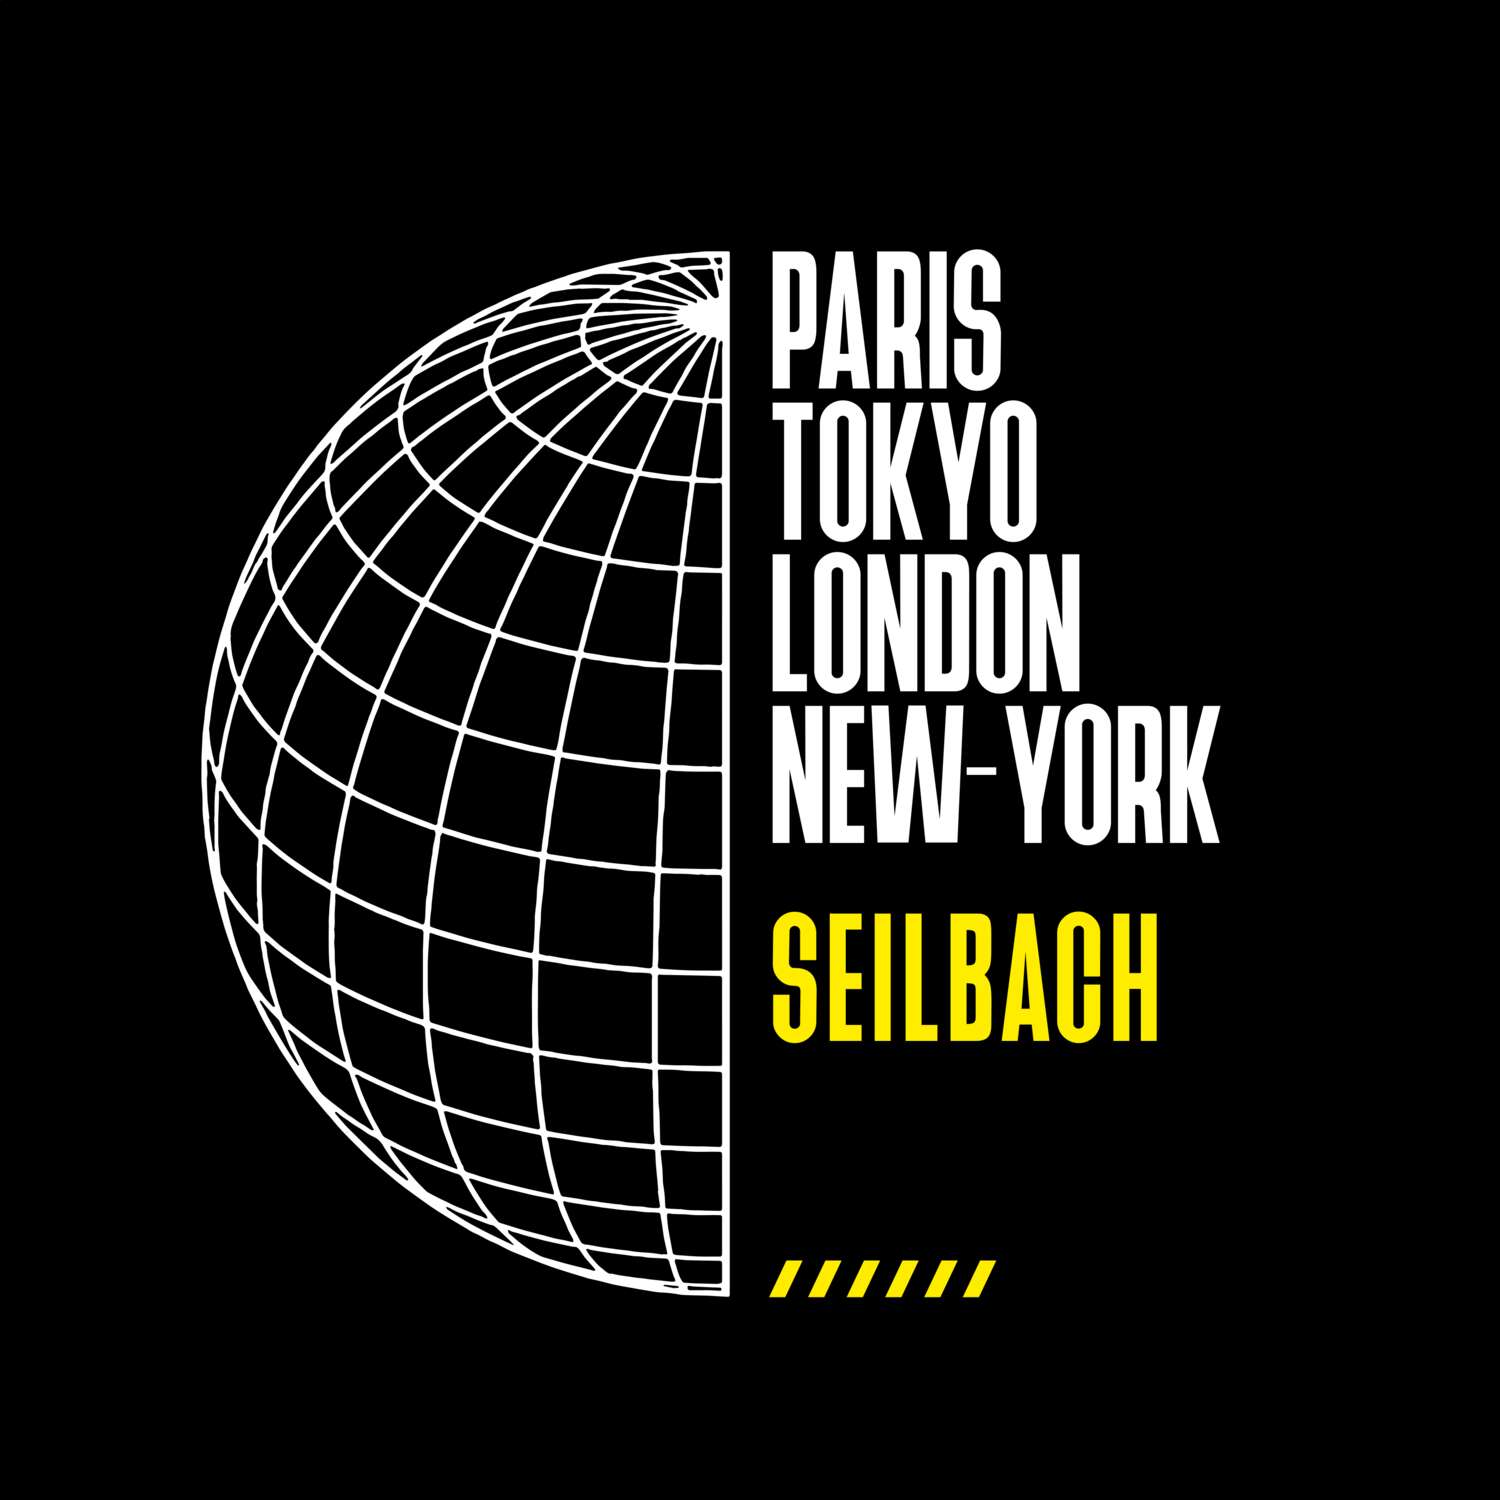 Seilbach T-Shirt »Paris Tokyo London«